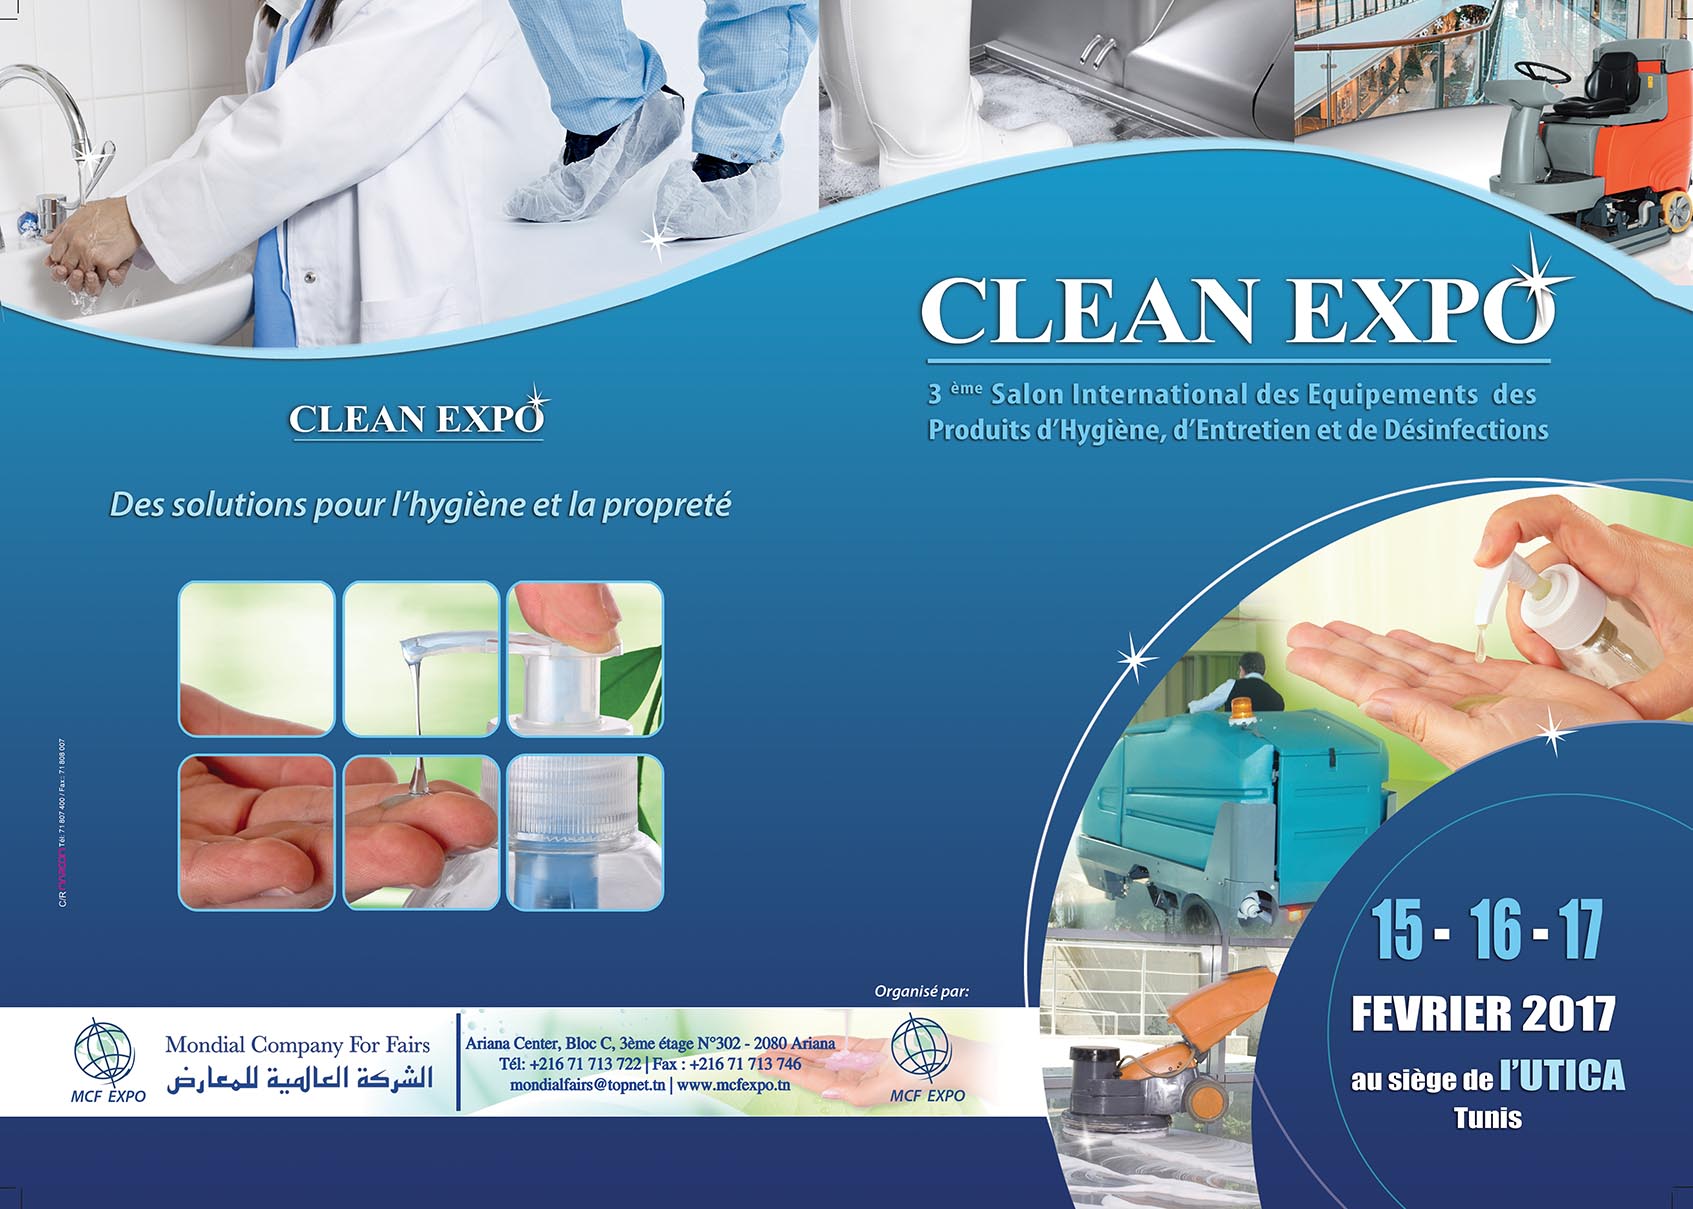 CLEAN EXPO | 3me Salon International des Equipements des Produits d'Hygine, d'Entretien et de Dsinfections